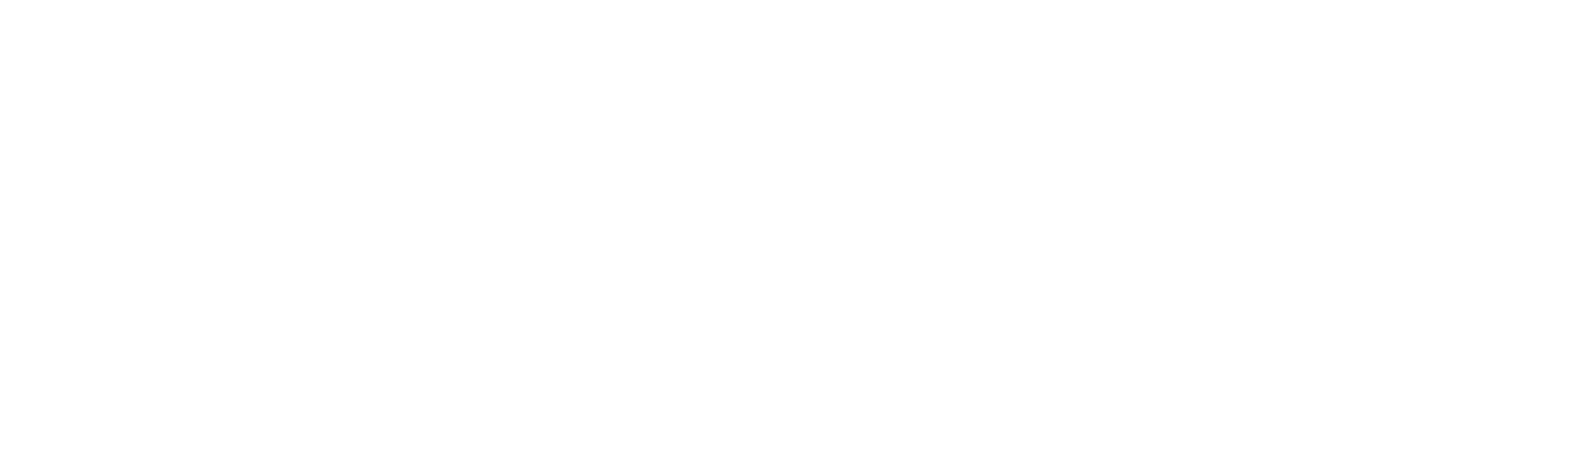 OHB SE logo large for dark backgrounds (transparent PNG)